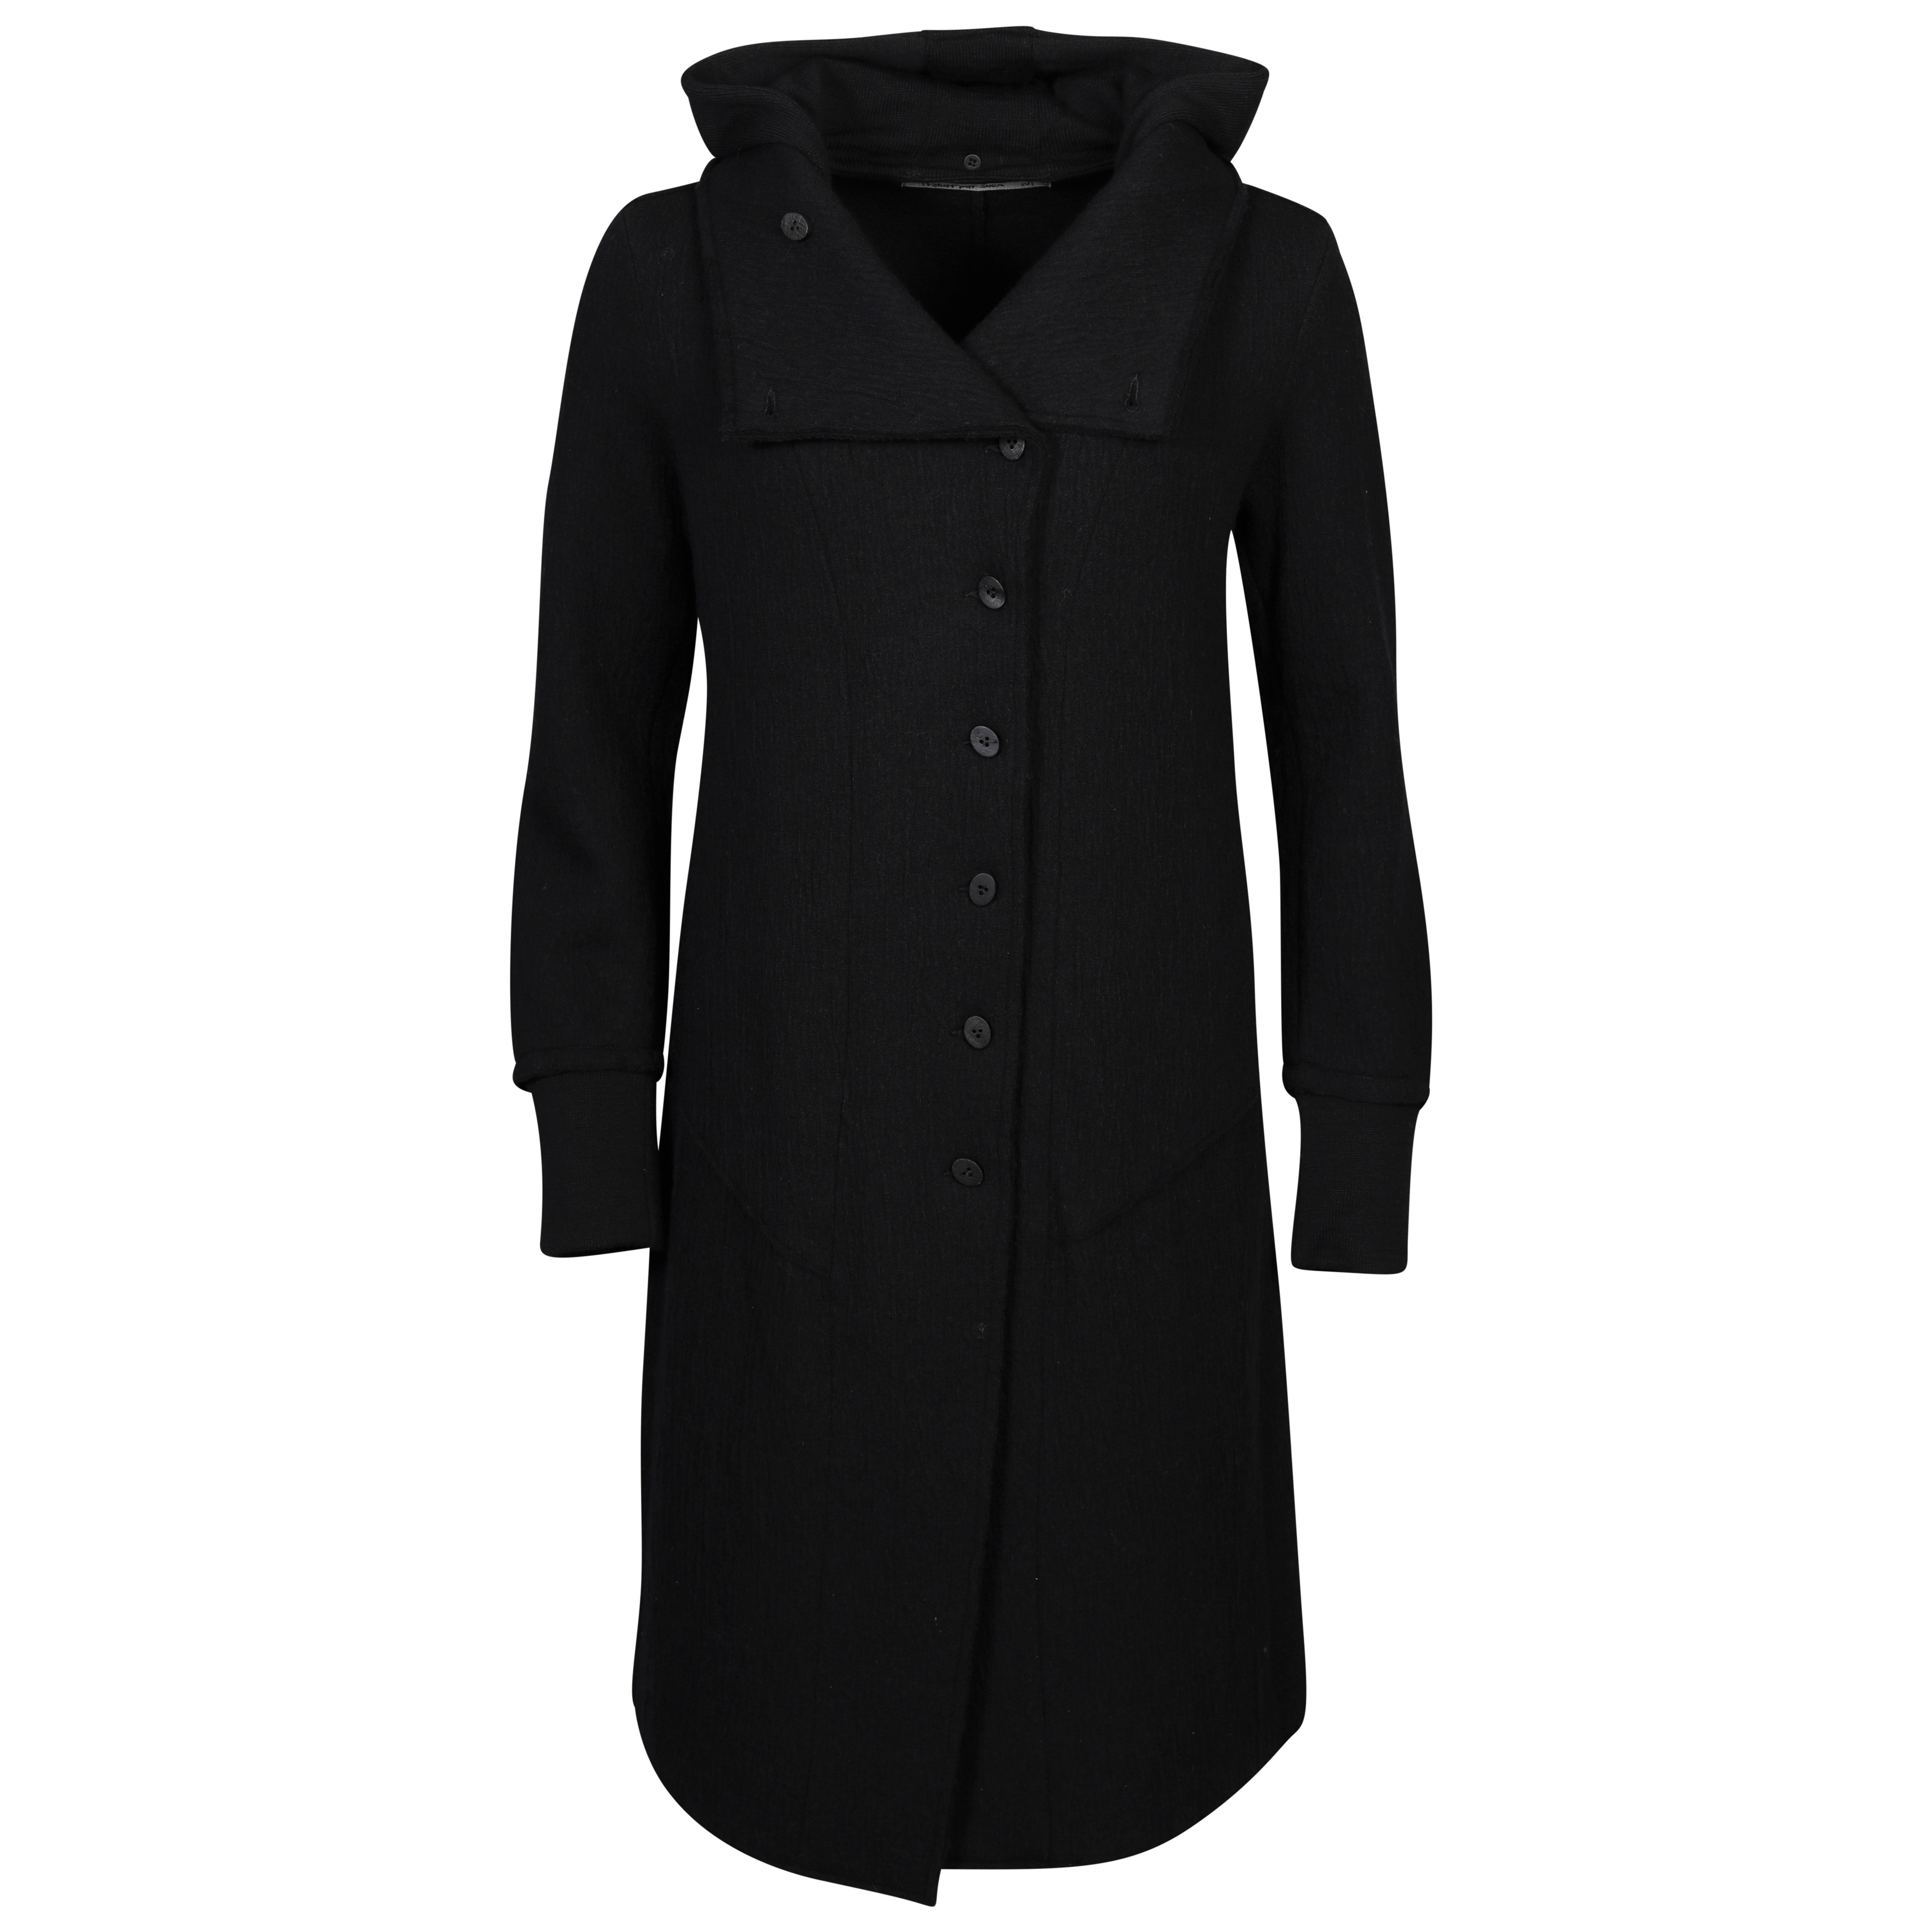 Transit Par Such Coat in Black With Detachable Hood M